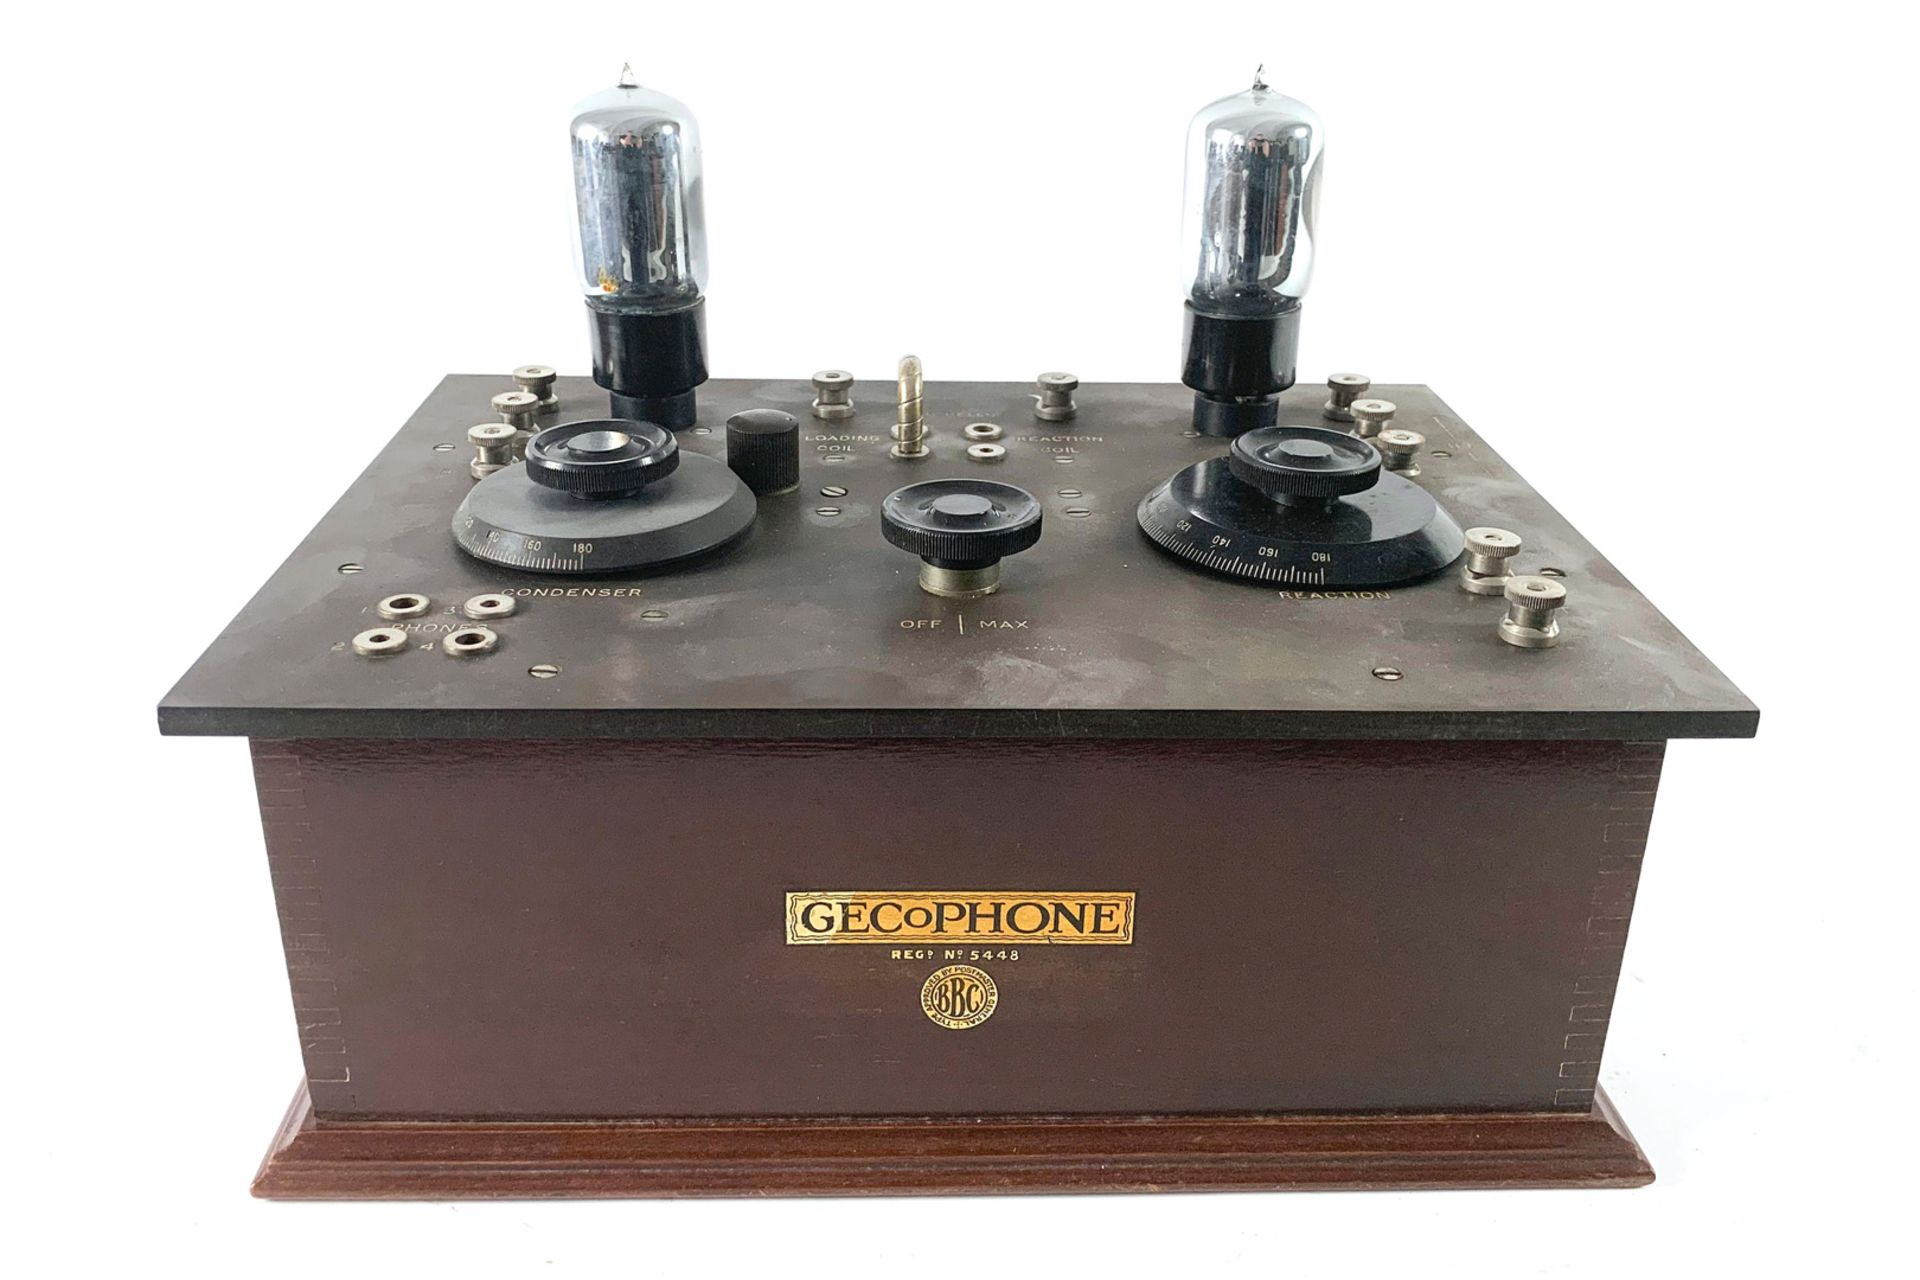 Gecophone Radiogerät, Nr. 5448, BBC, British Patent, B.C. 3250, Inst. Nr. 1554, mit 2 Reglern und